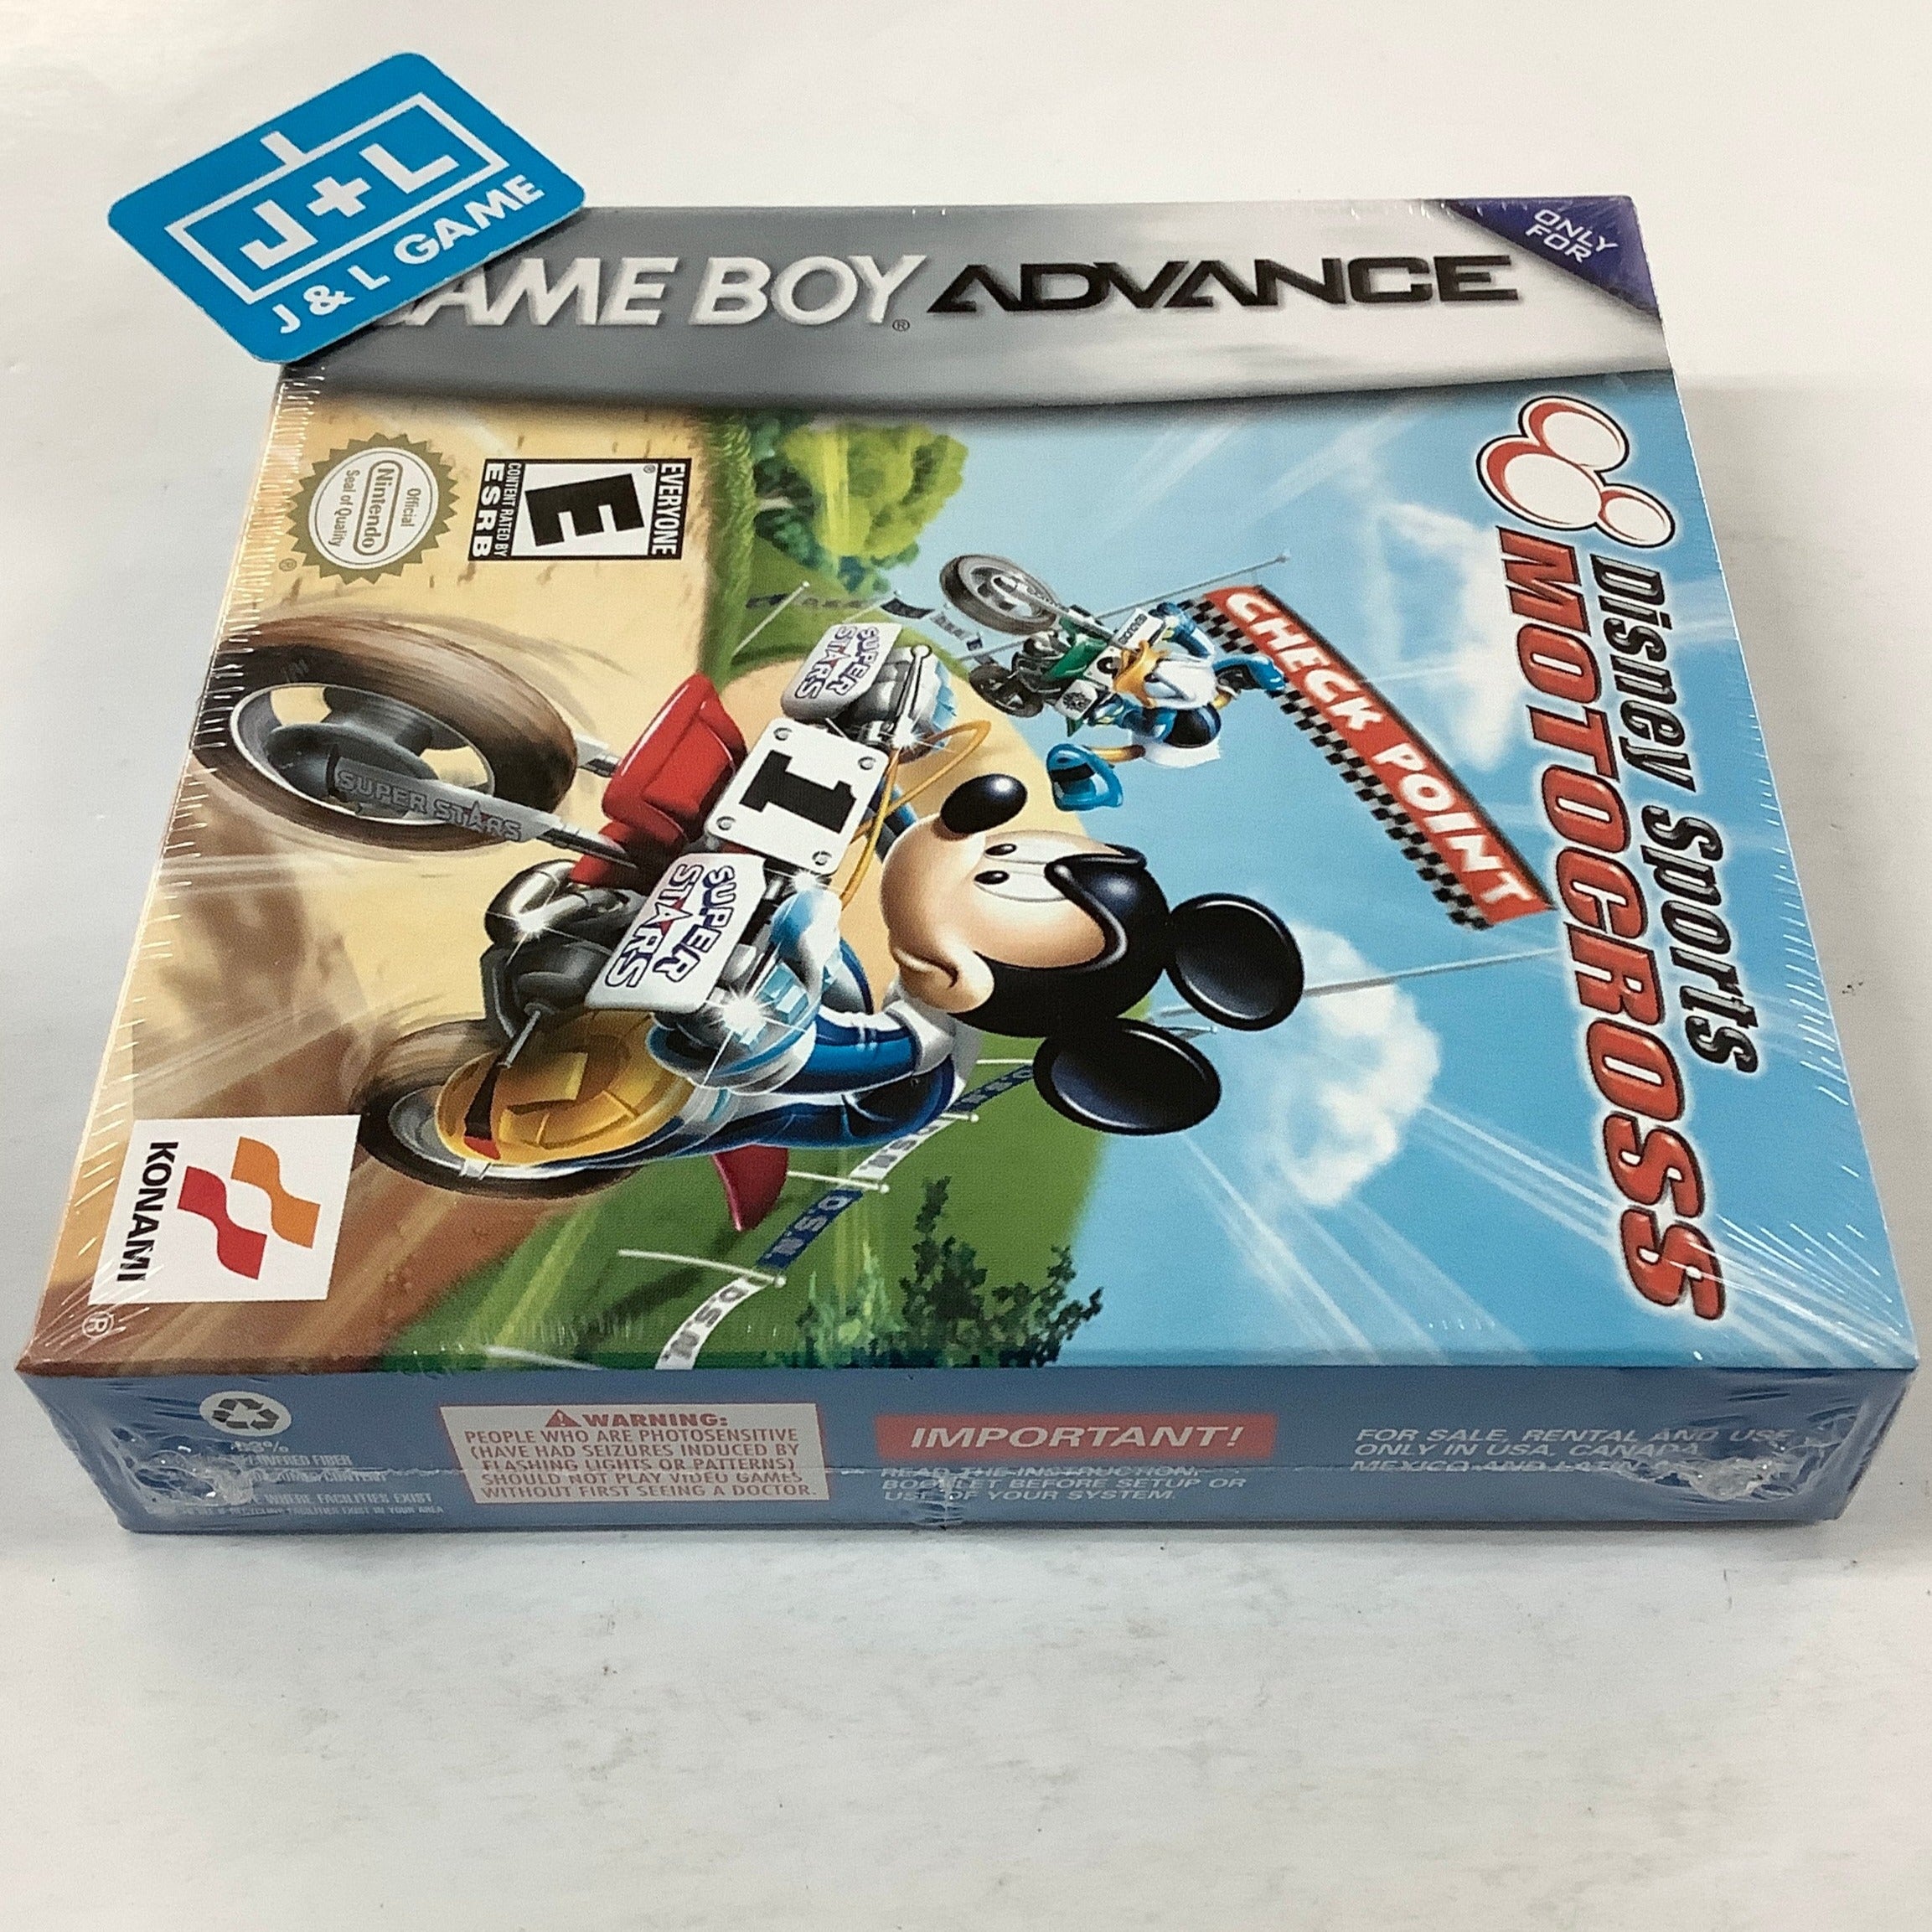 Disney Sports: Motocross - (GBA) Game Boy Advance Video Games Konami   